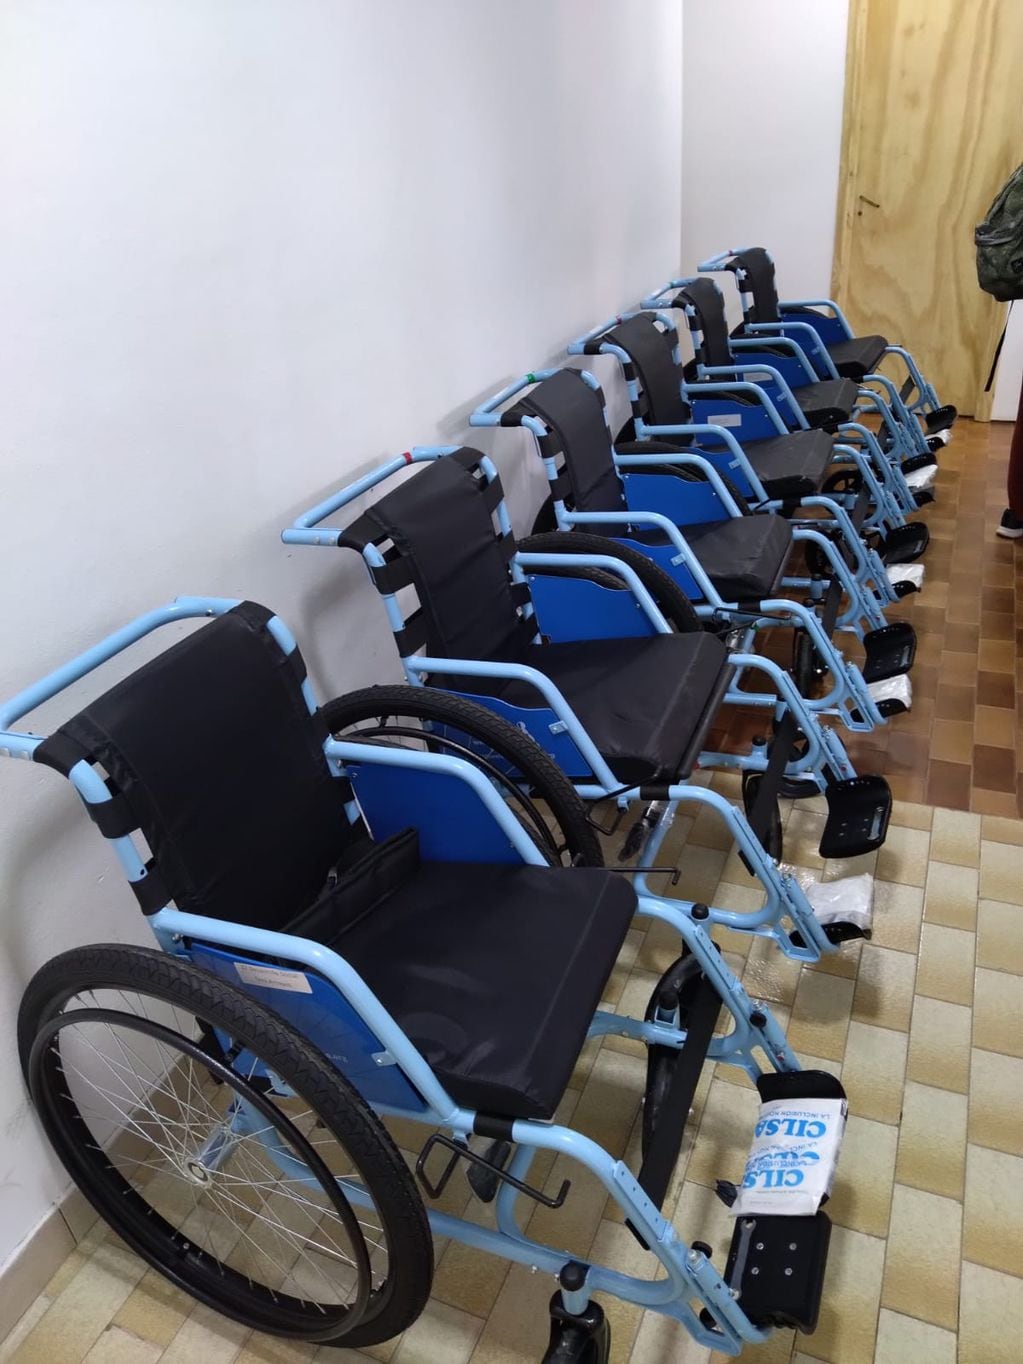 CILSA donó siete sillas de ruedas al Área de Discapacidad de la Municipalidad de Tres Arroyos